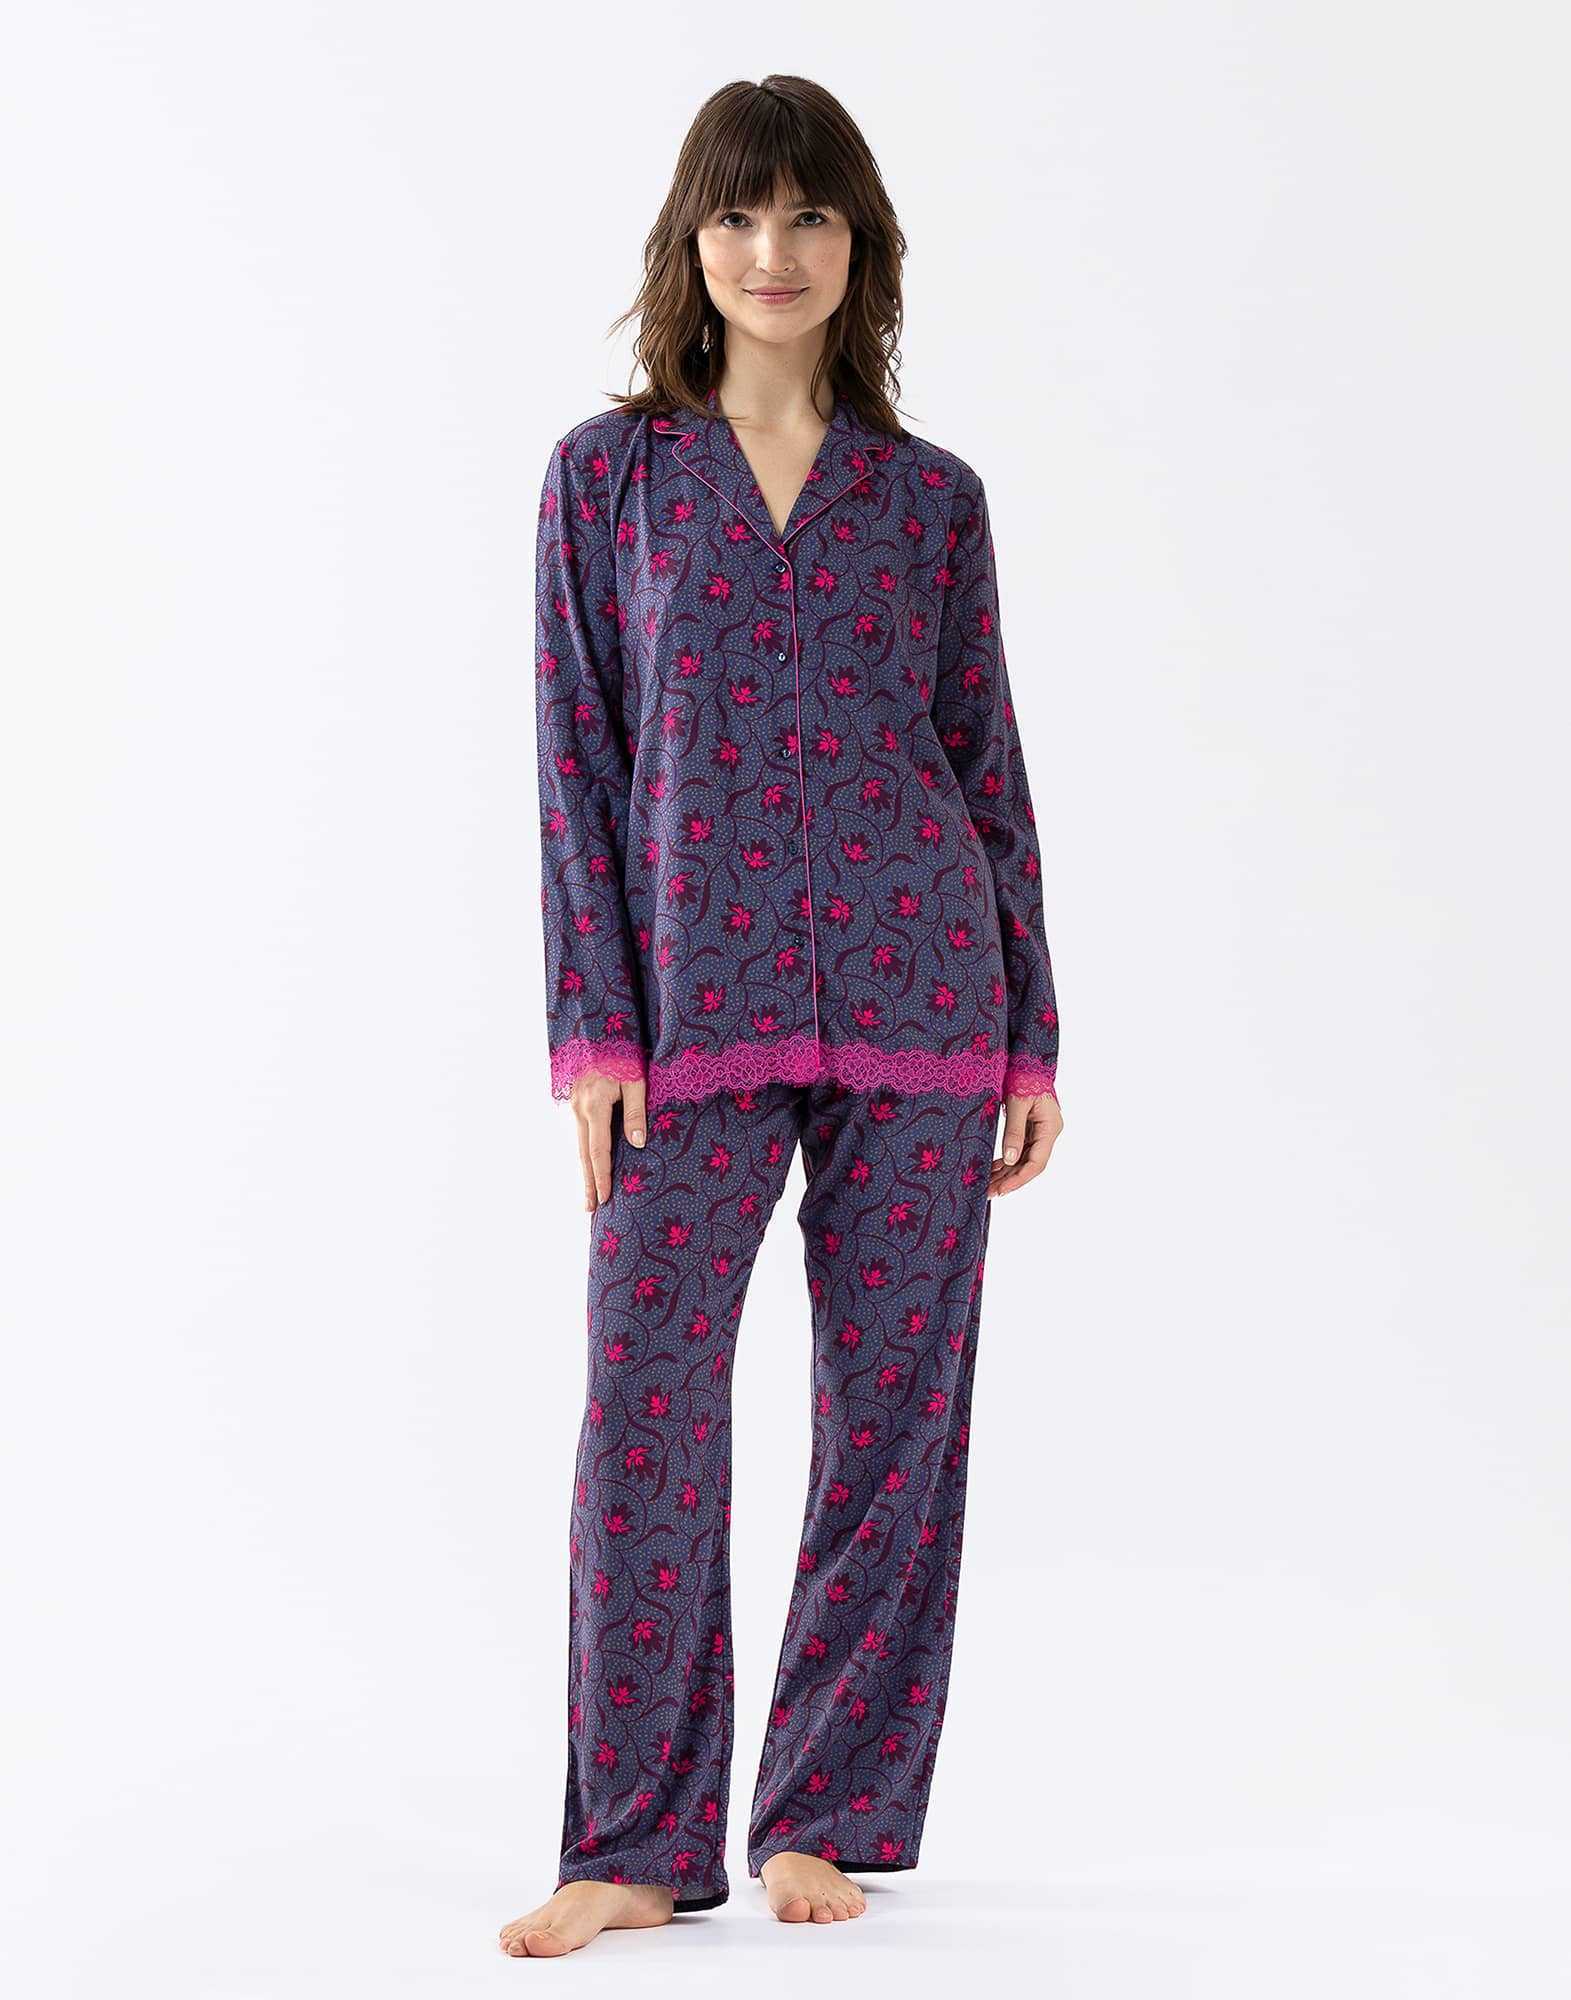 Buttoned pyjamas ALBA 606 100% viscose multicolour print| Lingerie le Chat